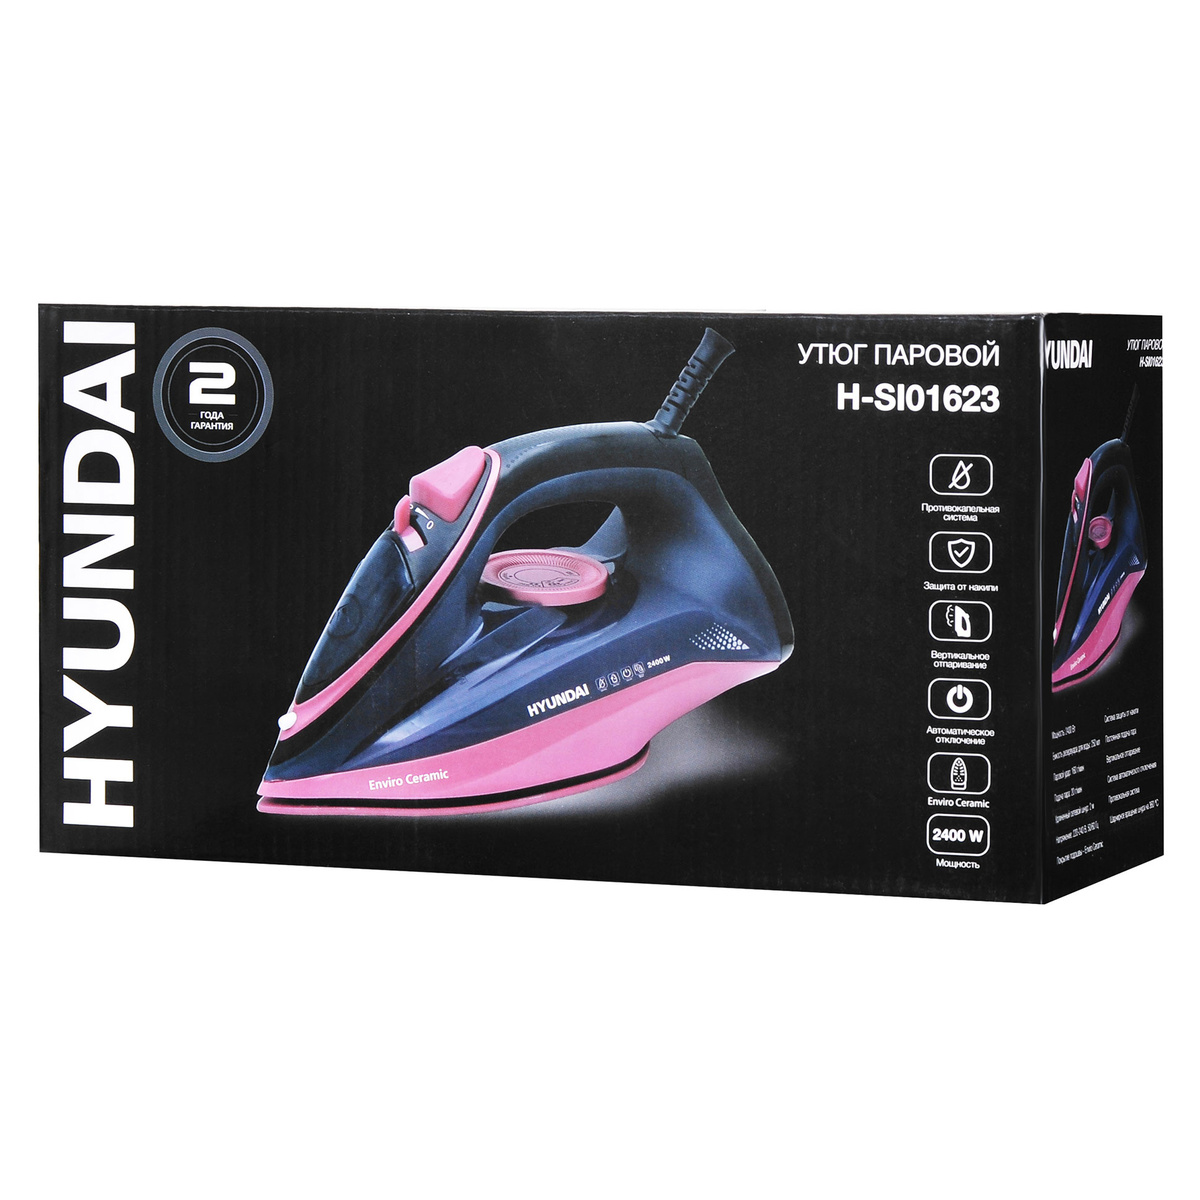 Утюг Hyundai H-SI01623 (Цвет: Black / Pink)